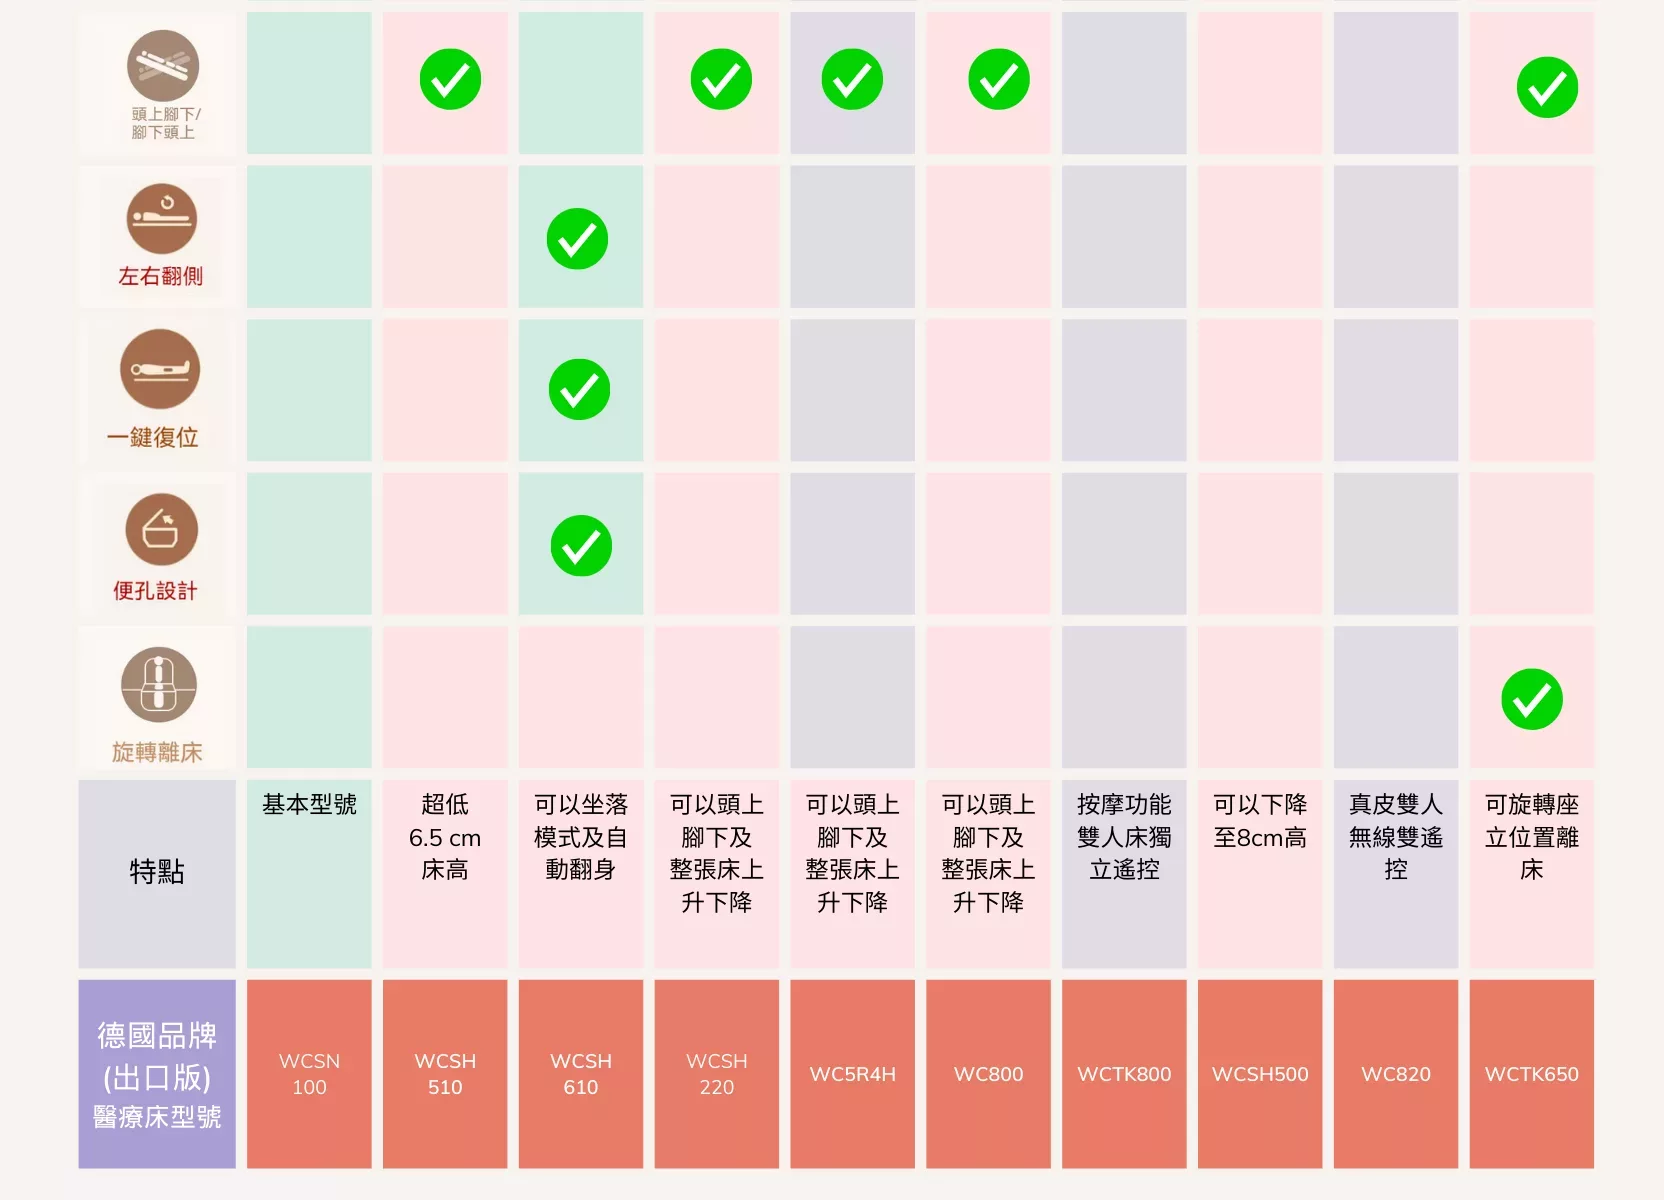 顏色編碼圖表比較各種產品或服務的功能或相容性，綠色複選標記表示積極匹配或批准。